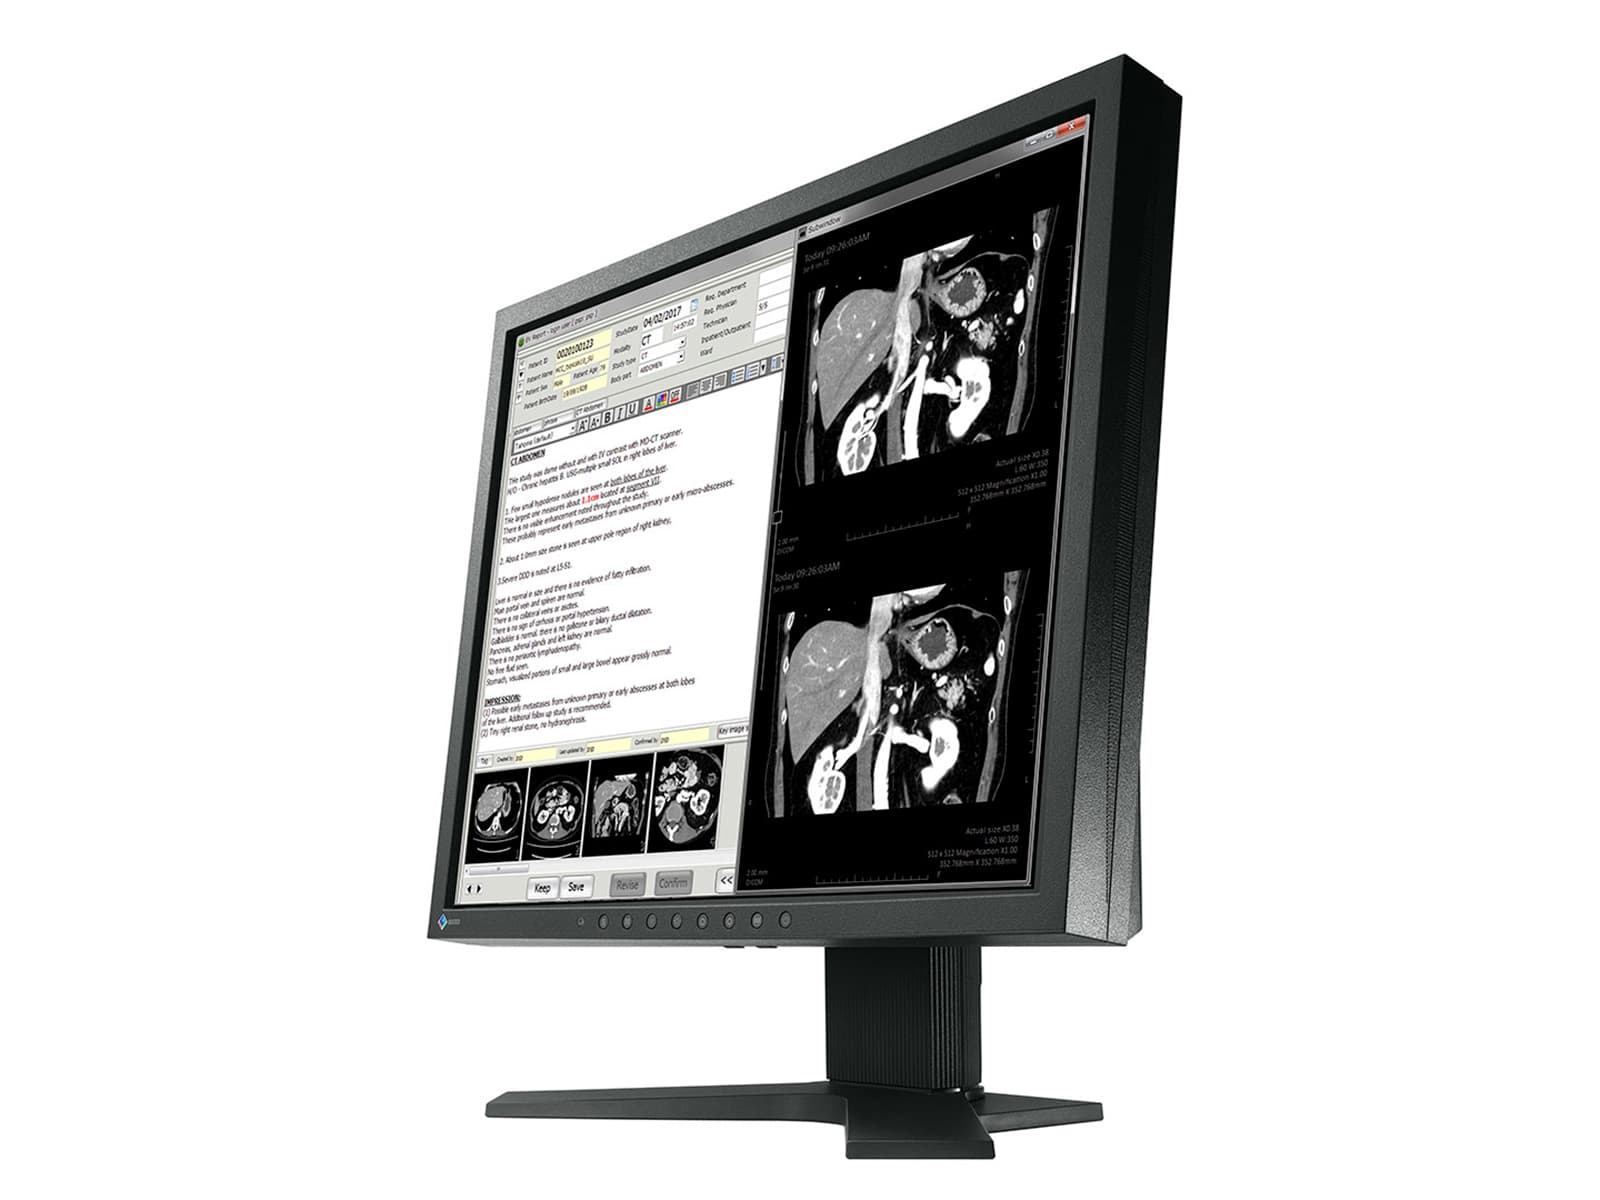 Monitor de revisión clínica en color Eizo RadiForce MX191 de 1 MP y 19" (MX191) Monitors.com